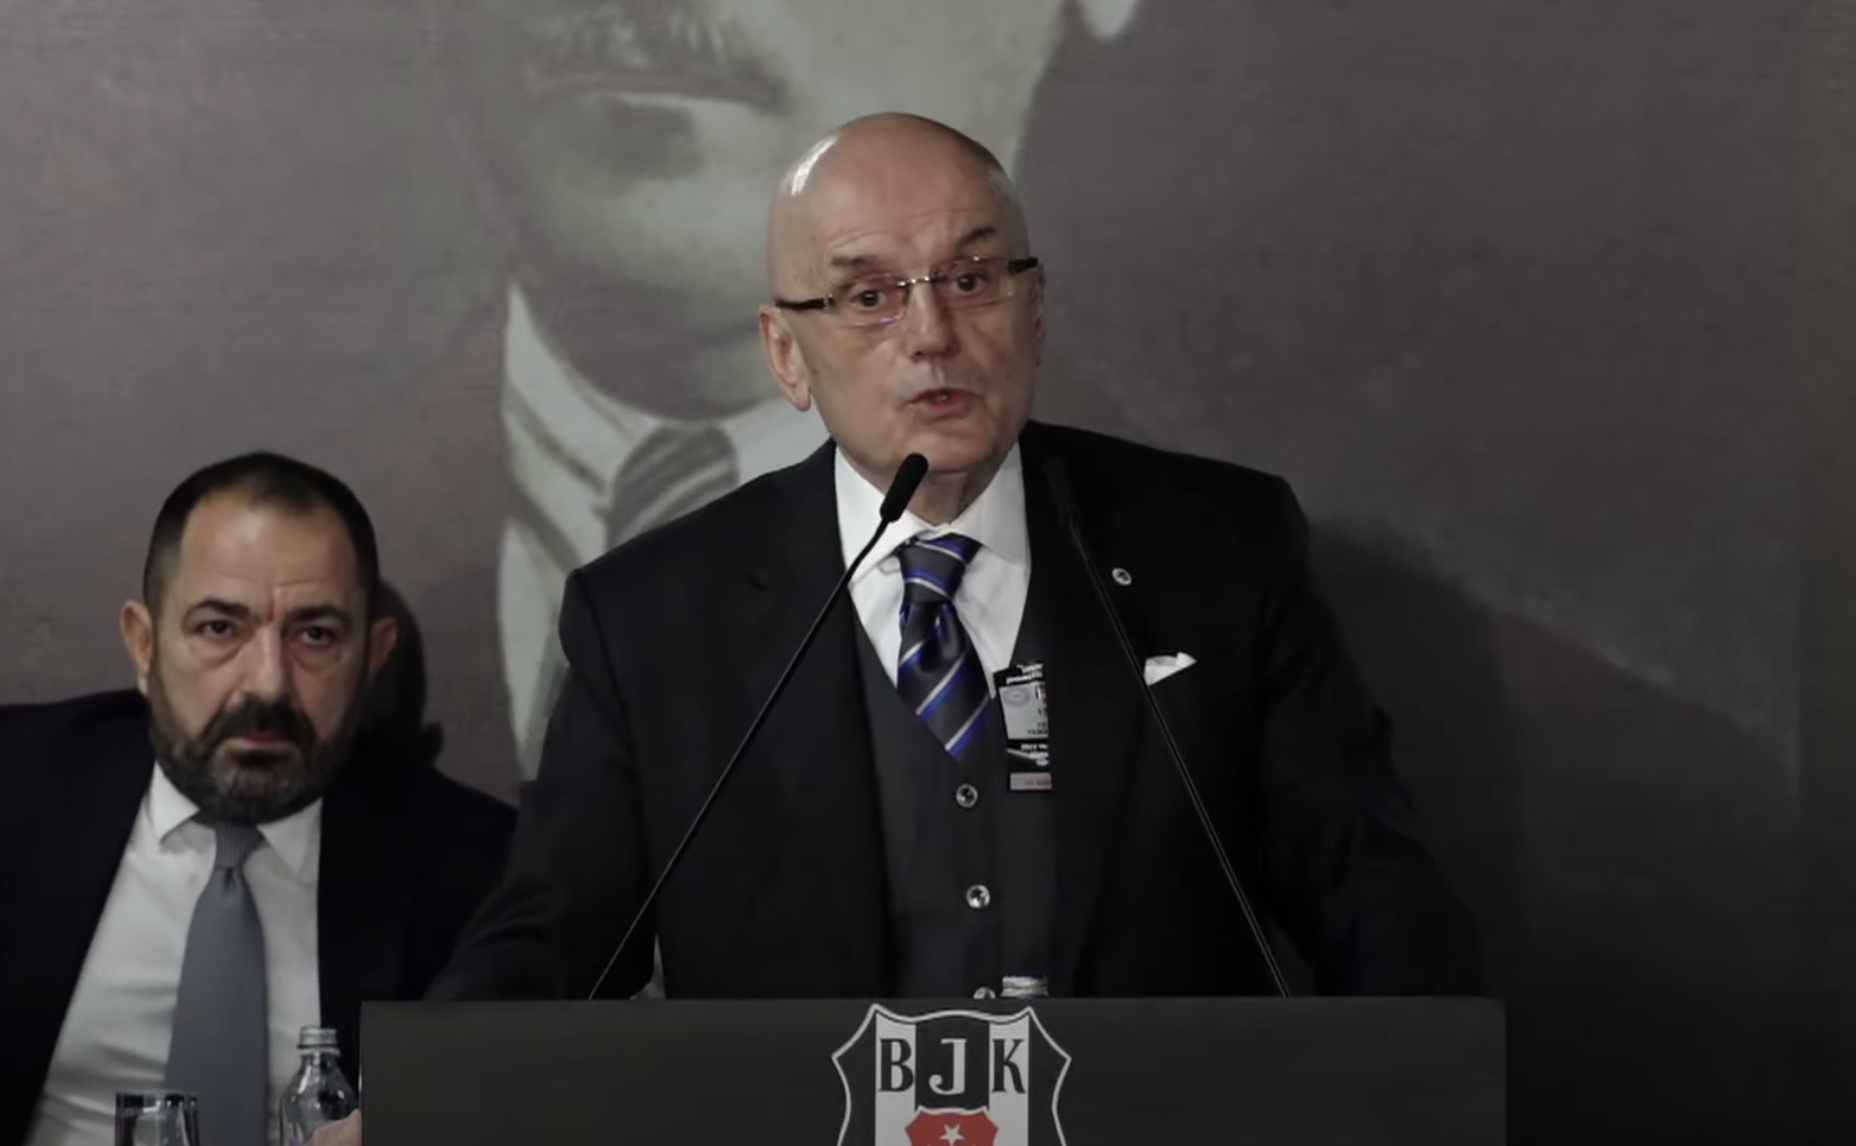 Beşiktaş Divan Kurulu Başkanı Tevfik Yamantürk, divan kurulu toplantısında Ahmet Nur Çebi için çok sert açıklamalarda bulundu.